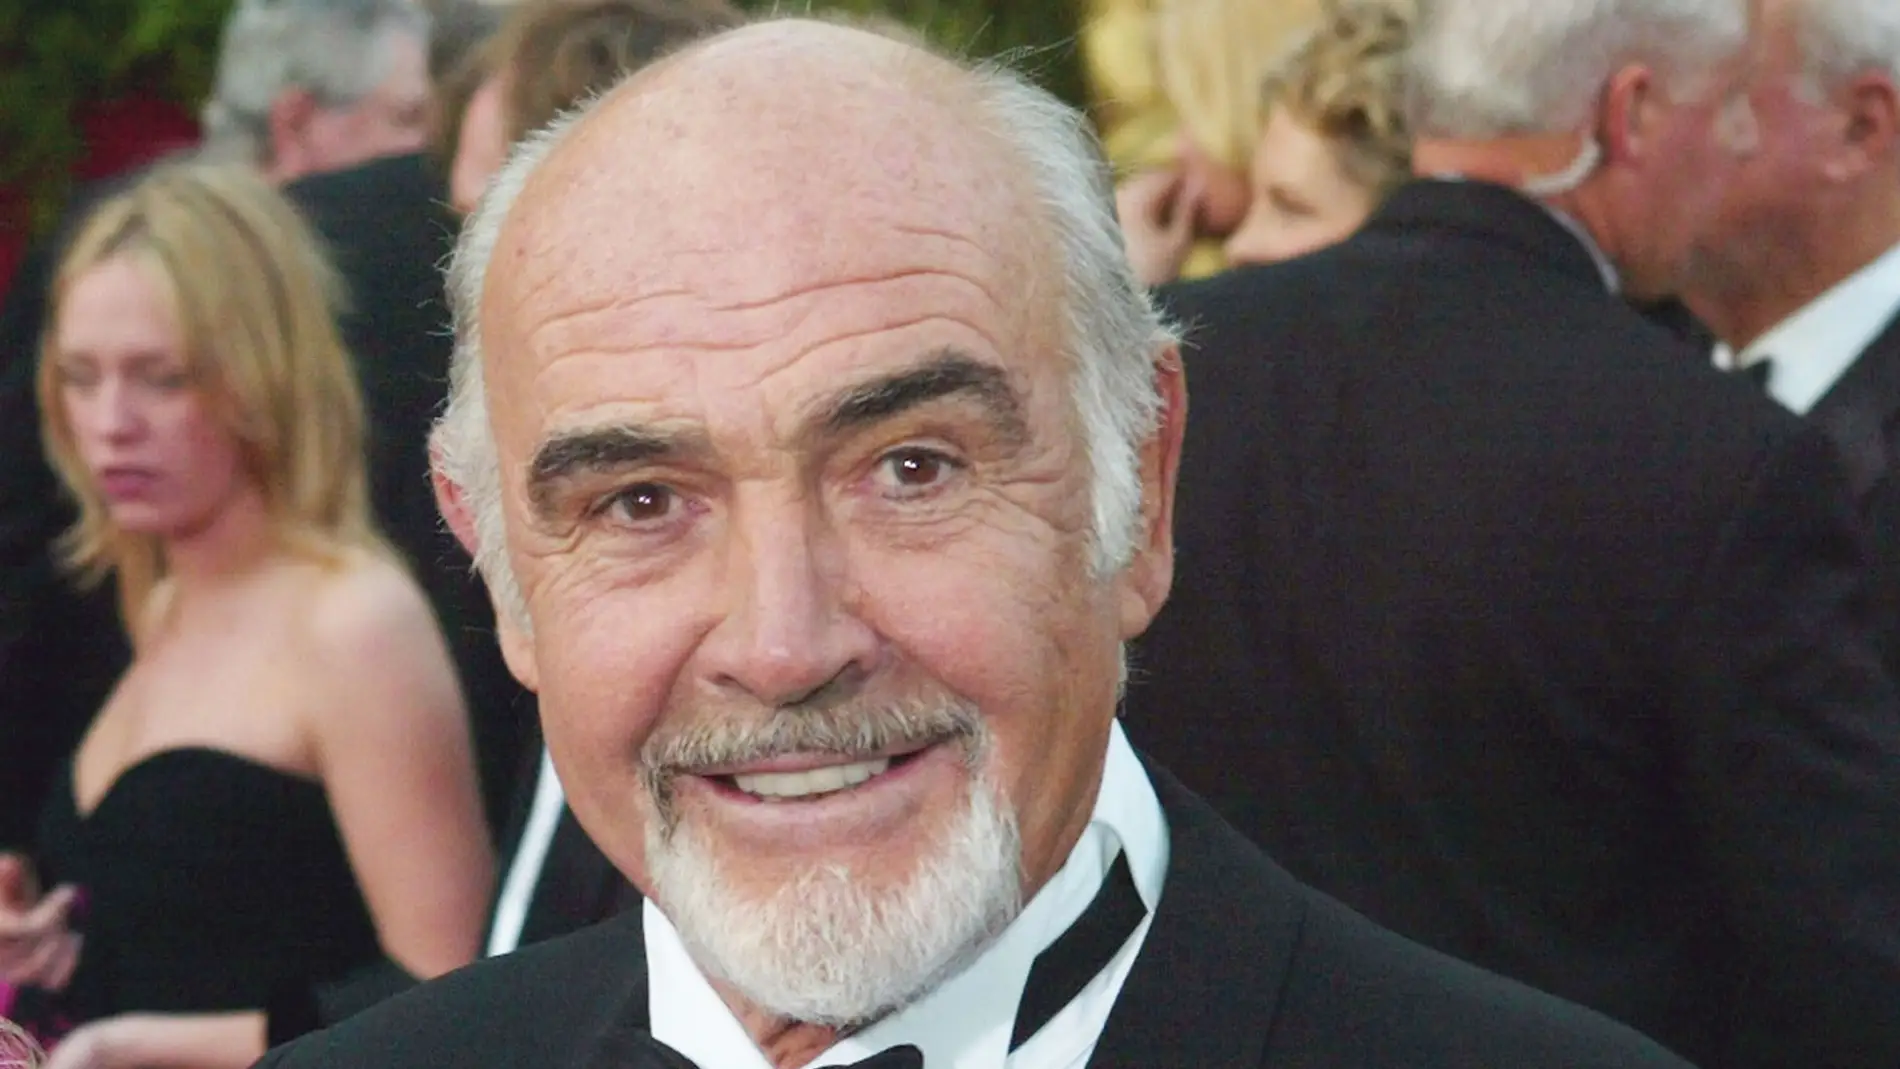 El actor Sean Connery